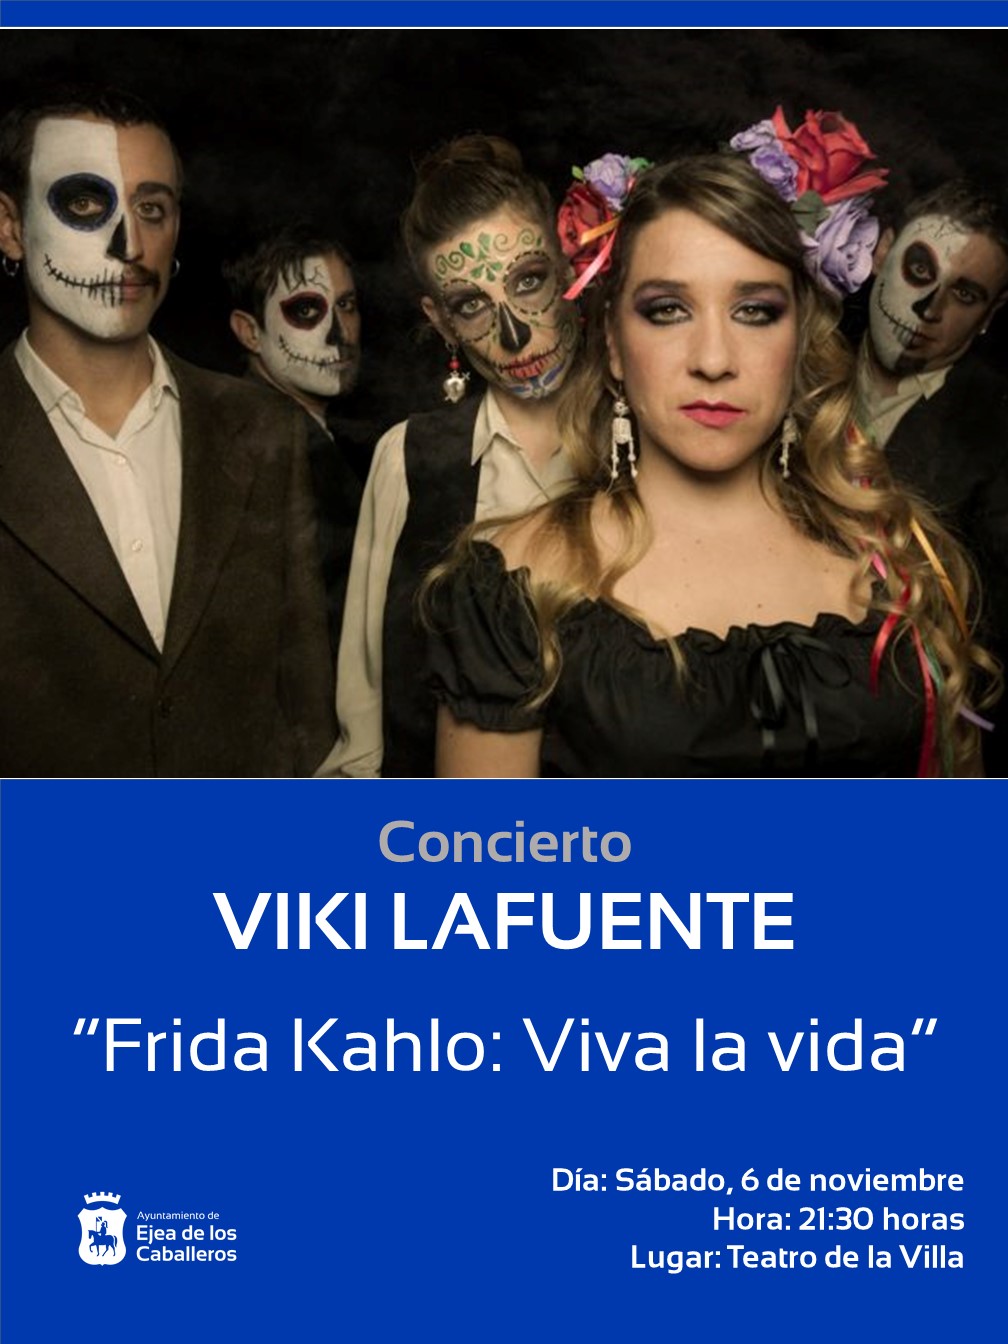 En este momento estás viendo La cantante Viki Lafuente presentará el concierto “Frida Kahlo: Viva la vida”